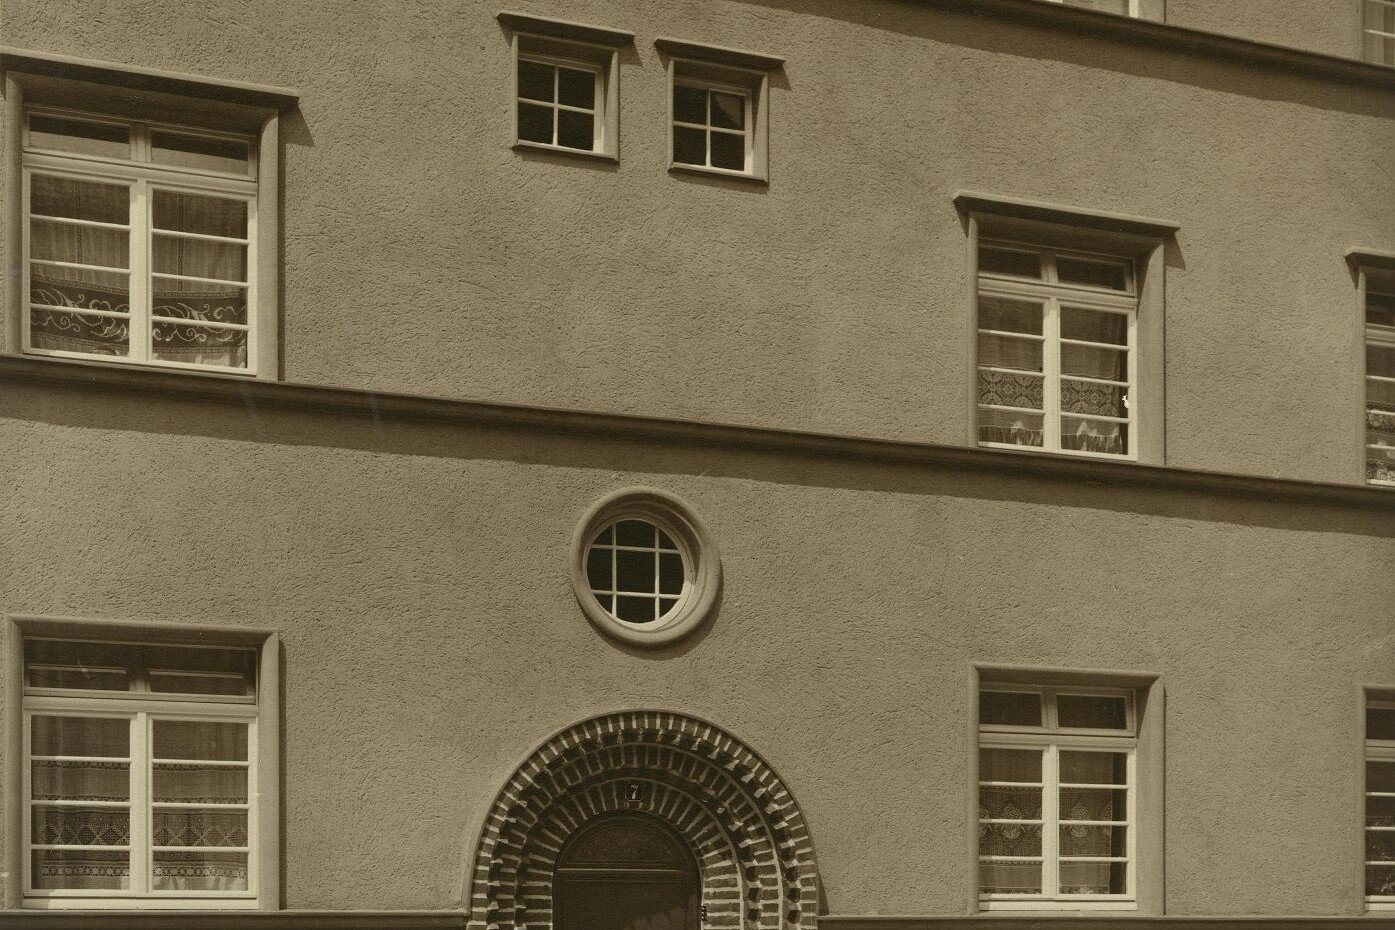 Historisches Foto von den rundbogenförmigen Türen in der Germaniasiedlung in Höhenberg